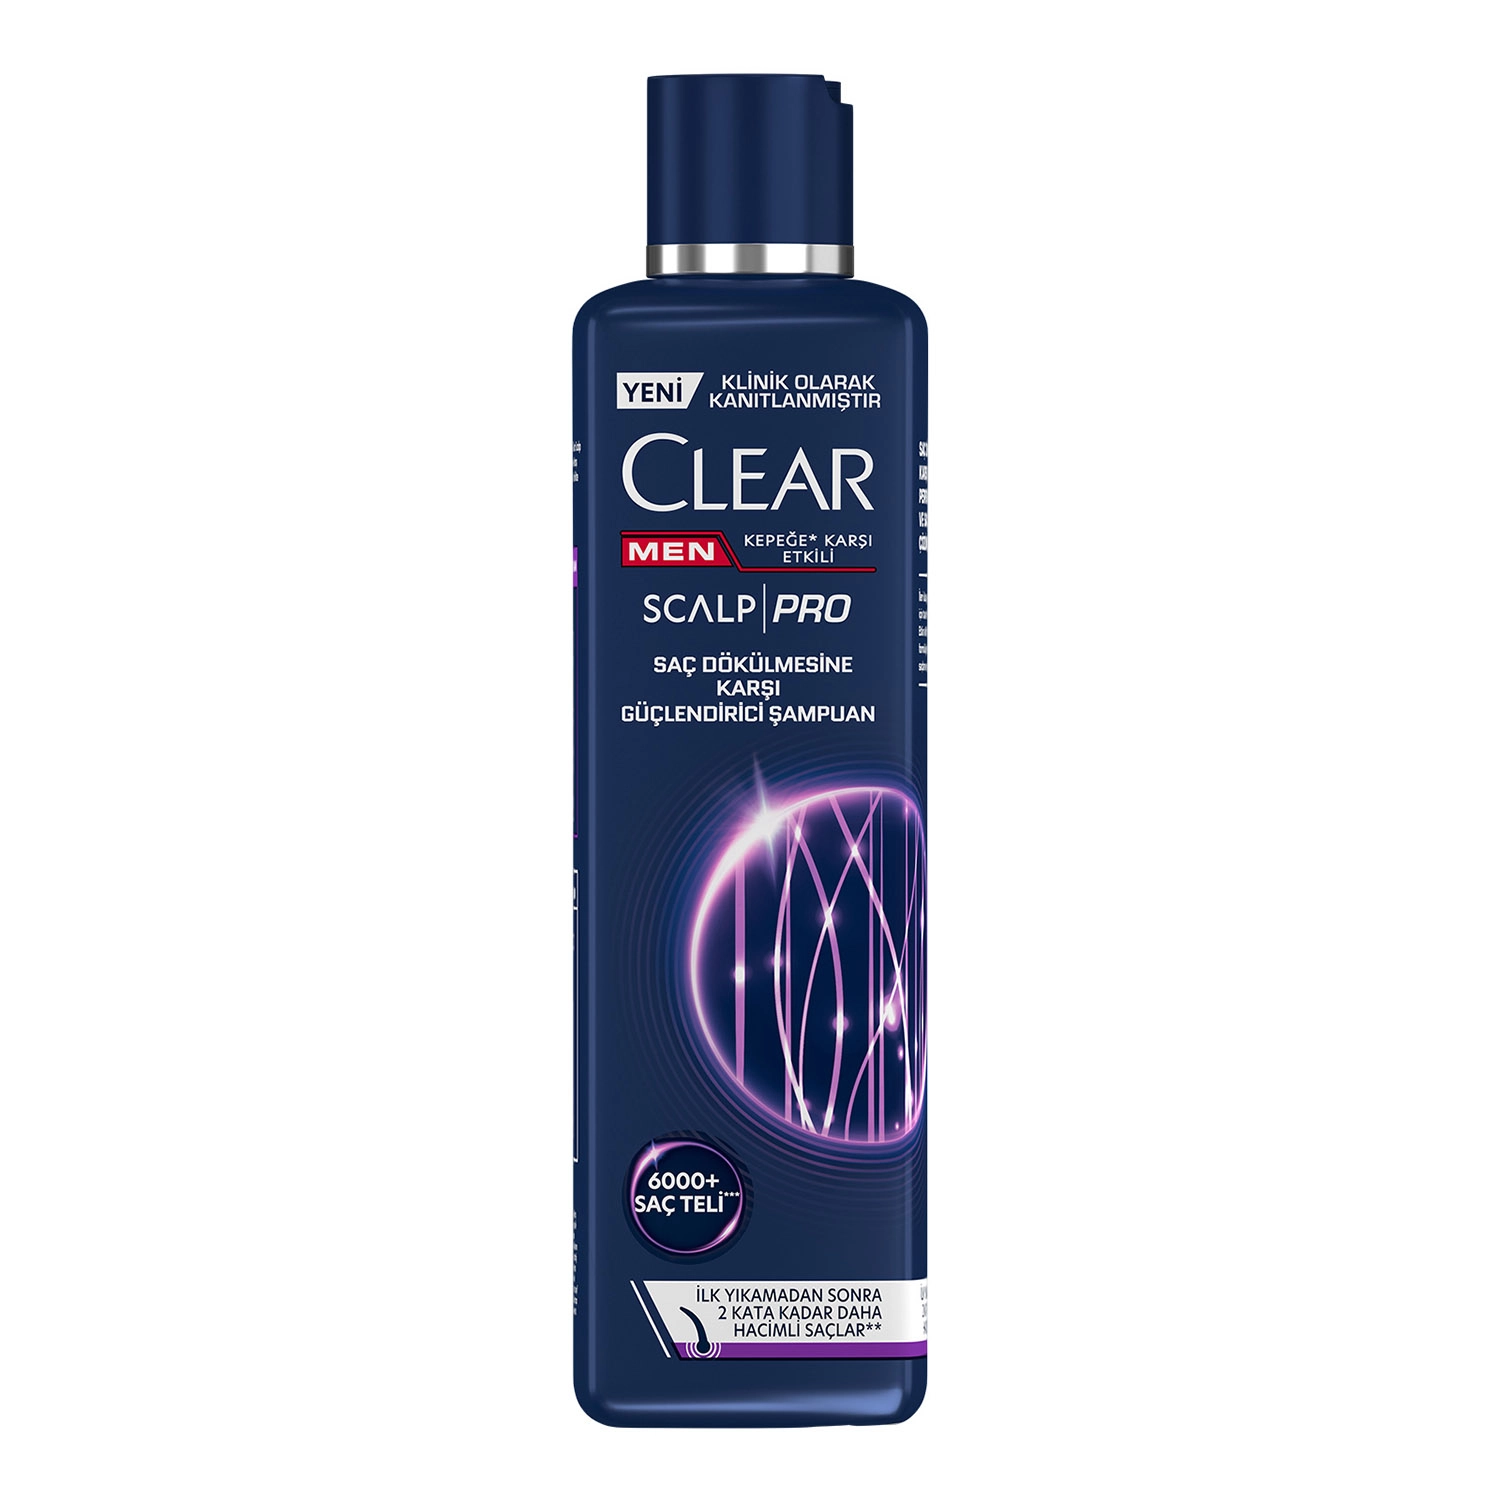 Clear Men Scalp Pro Güçlendirici Şampuan Saç Dökülmesine ve Kepeğe Karşı Etkili 300 ml - Saç Bakım Güzellik